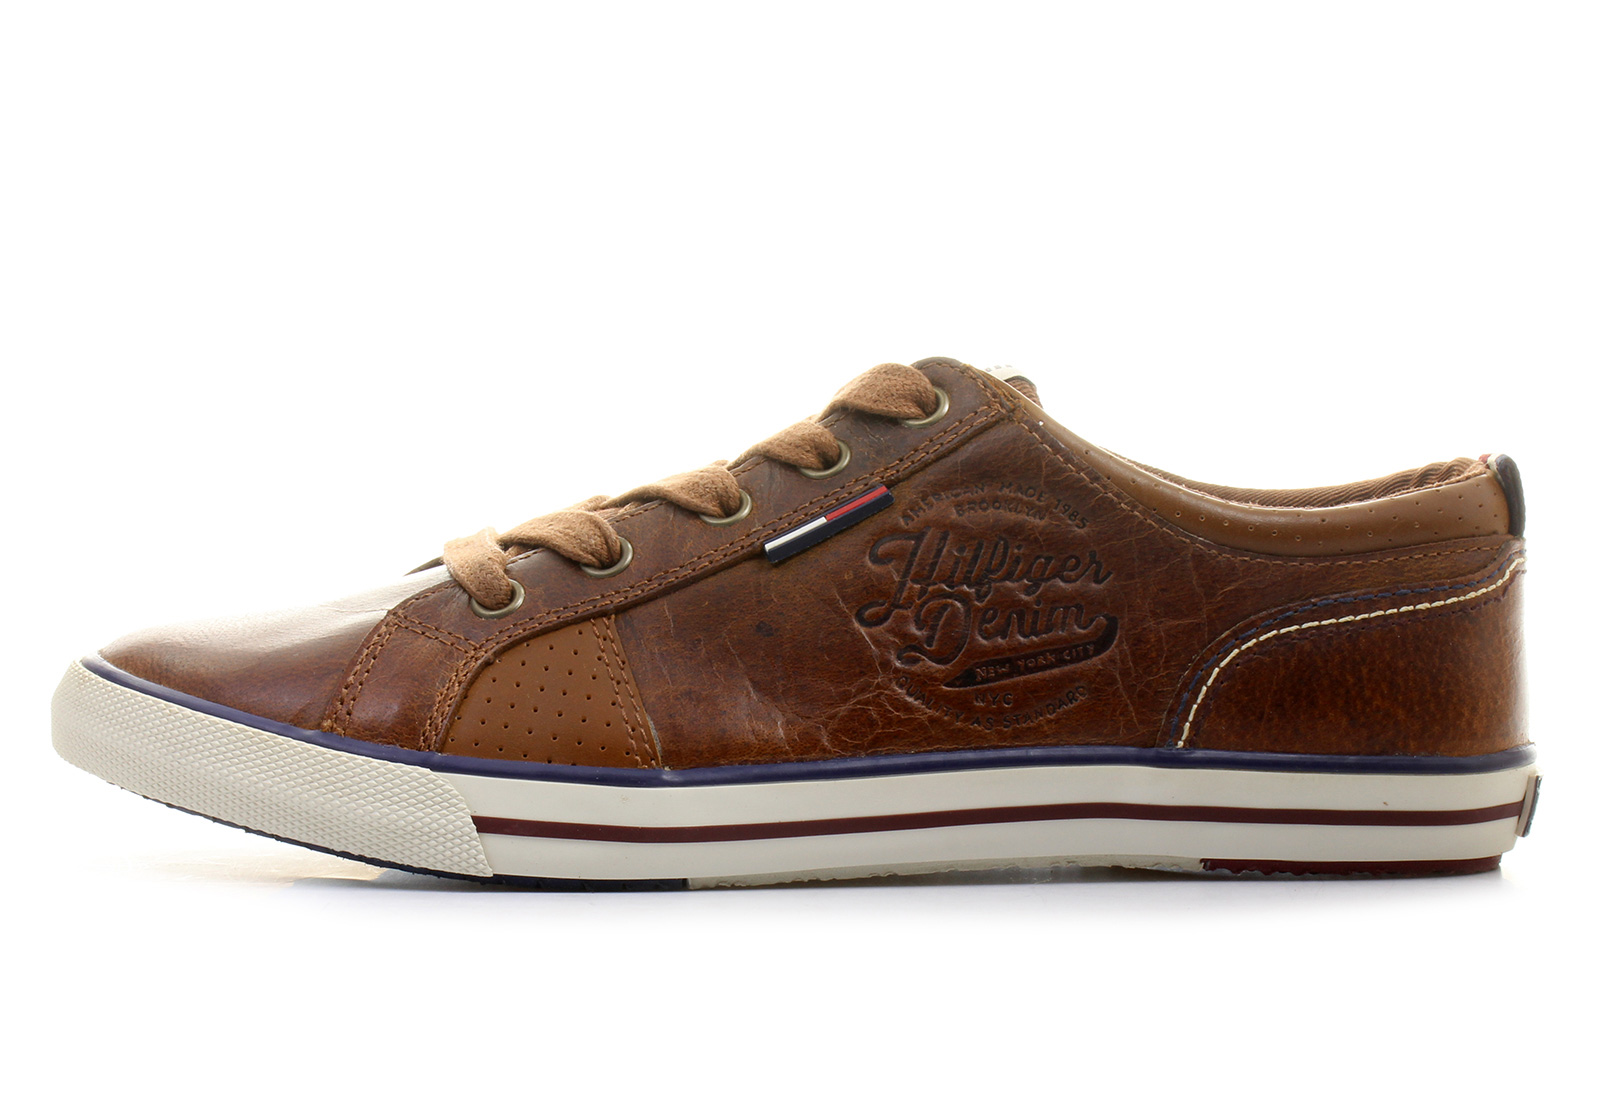 Tommy Hilfiger Shoes - Samson 11a - 14f-7856-906 - Online shop for ...